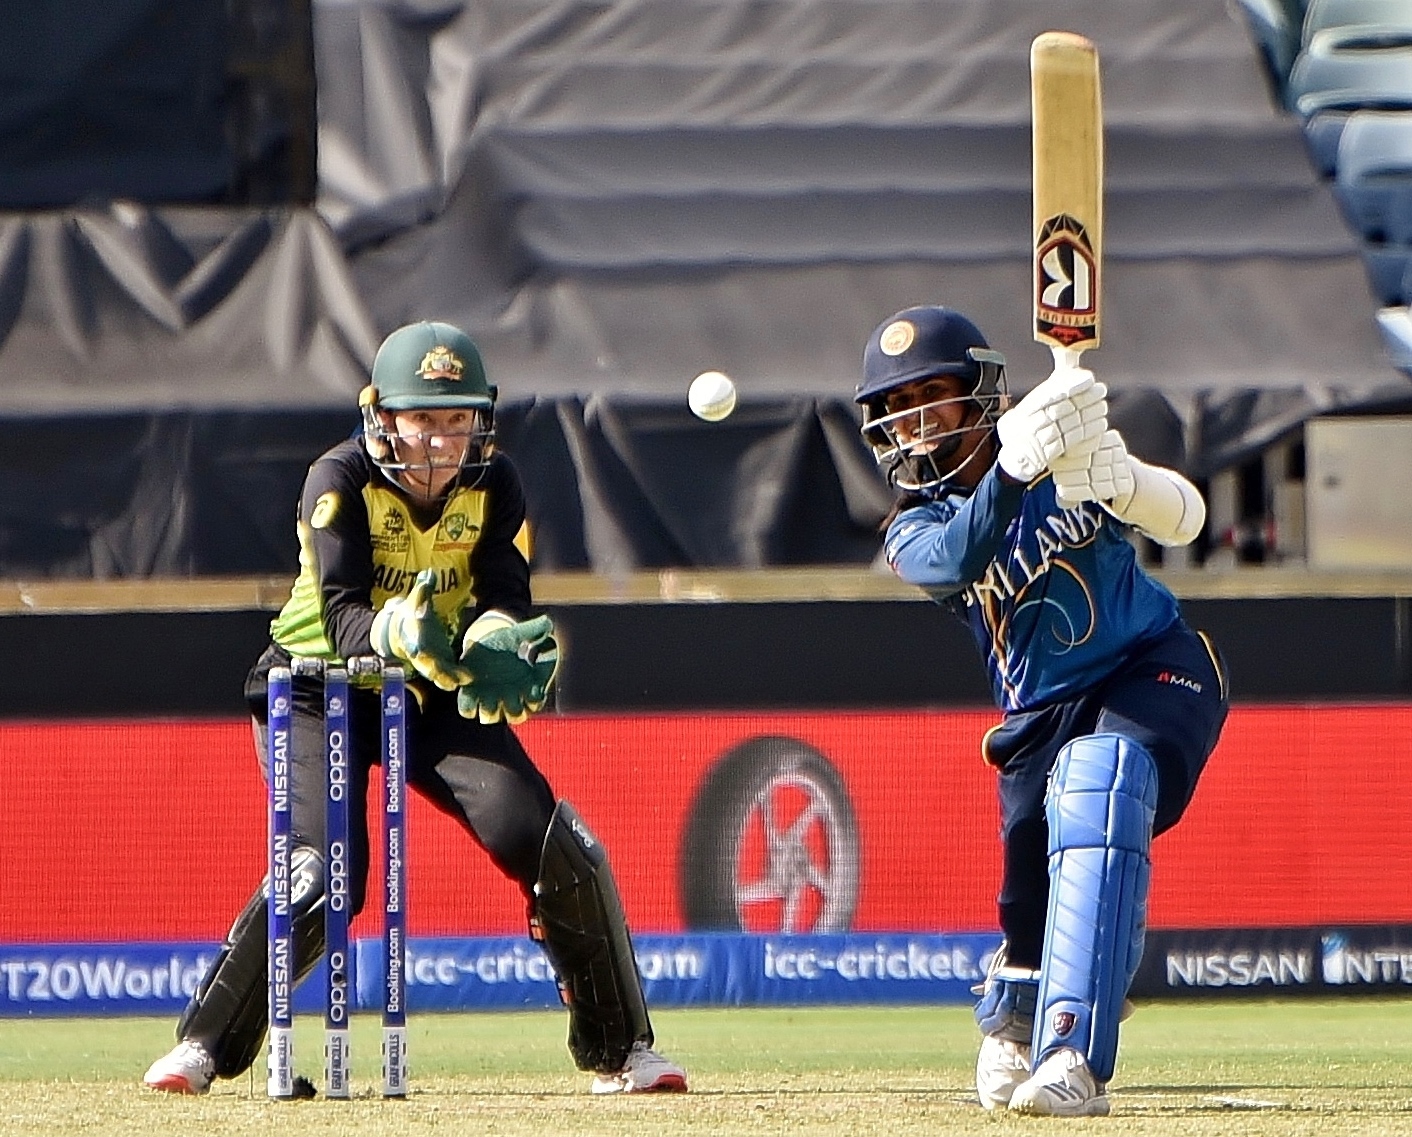 Sri Lankan female batsman scoring a drive